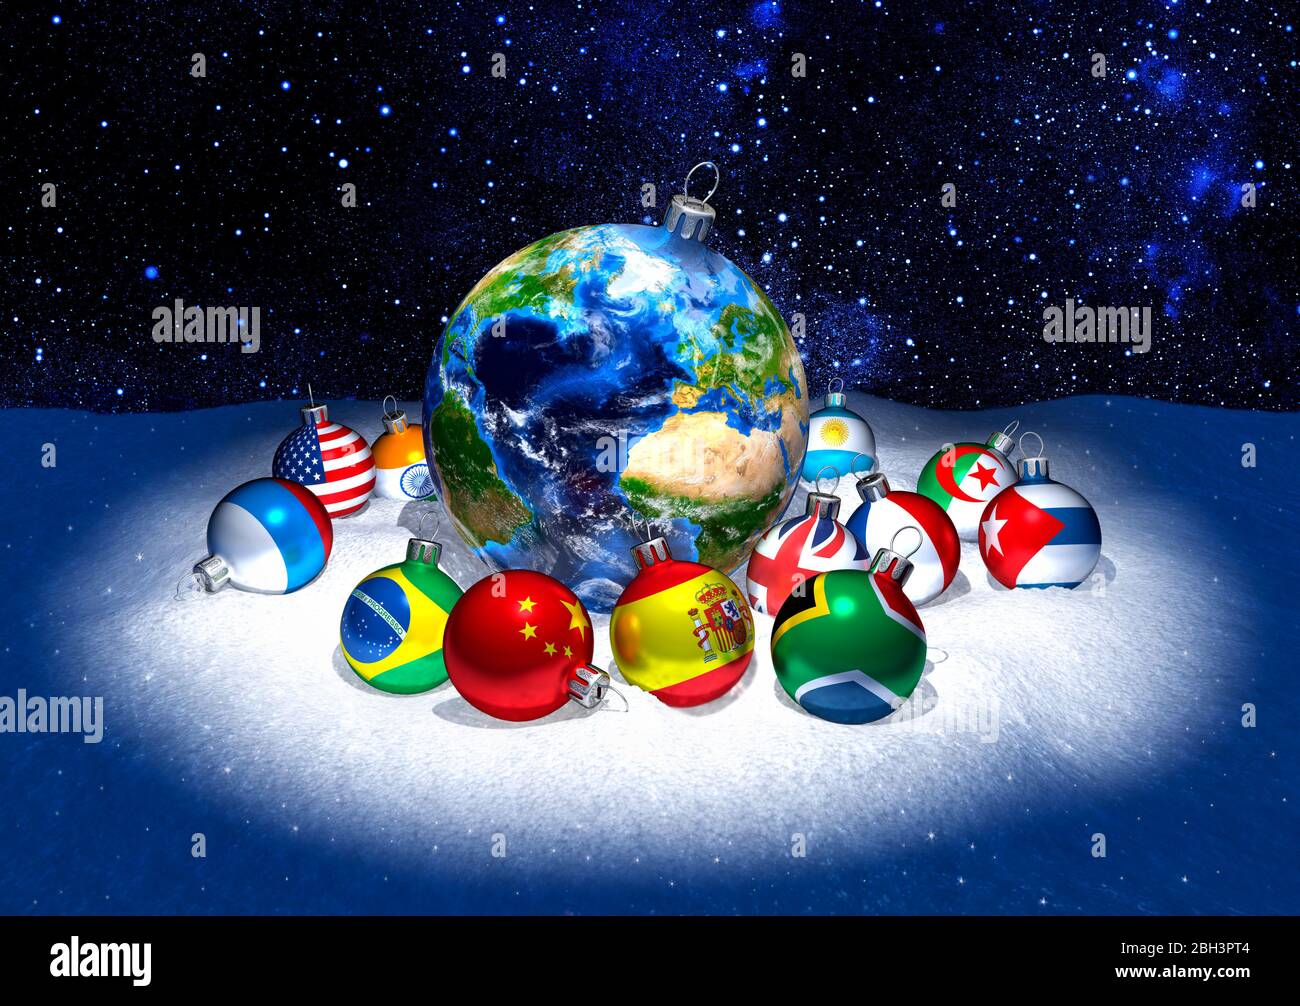 Boules de Noël. Planète terre entourée de petites décorations montrant des drapeaux si le monde. Neige. Arrière-plan étoile. Célébration internationale. Banque D'Images